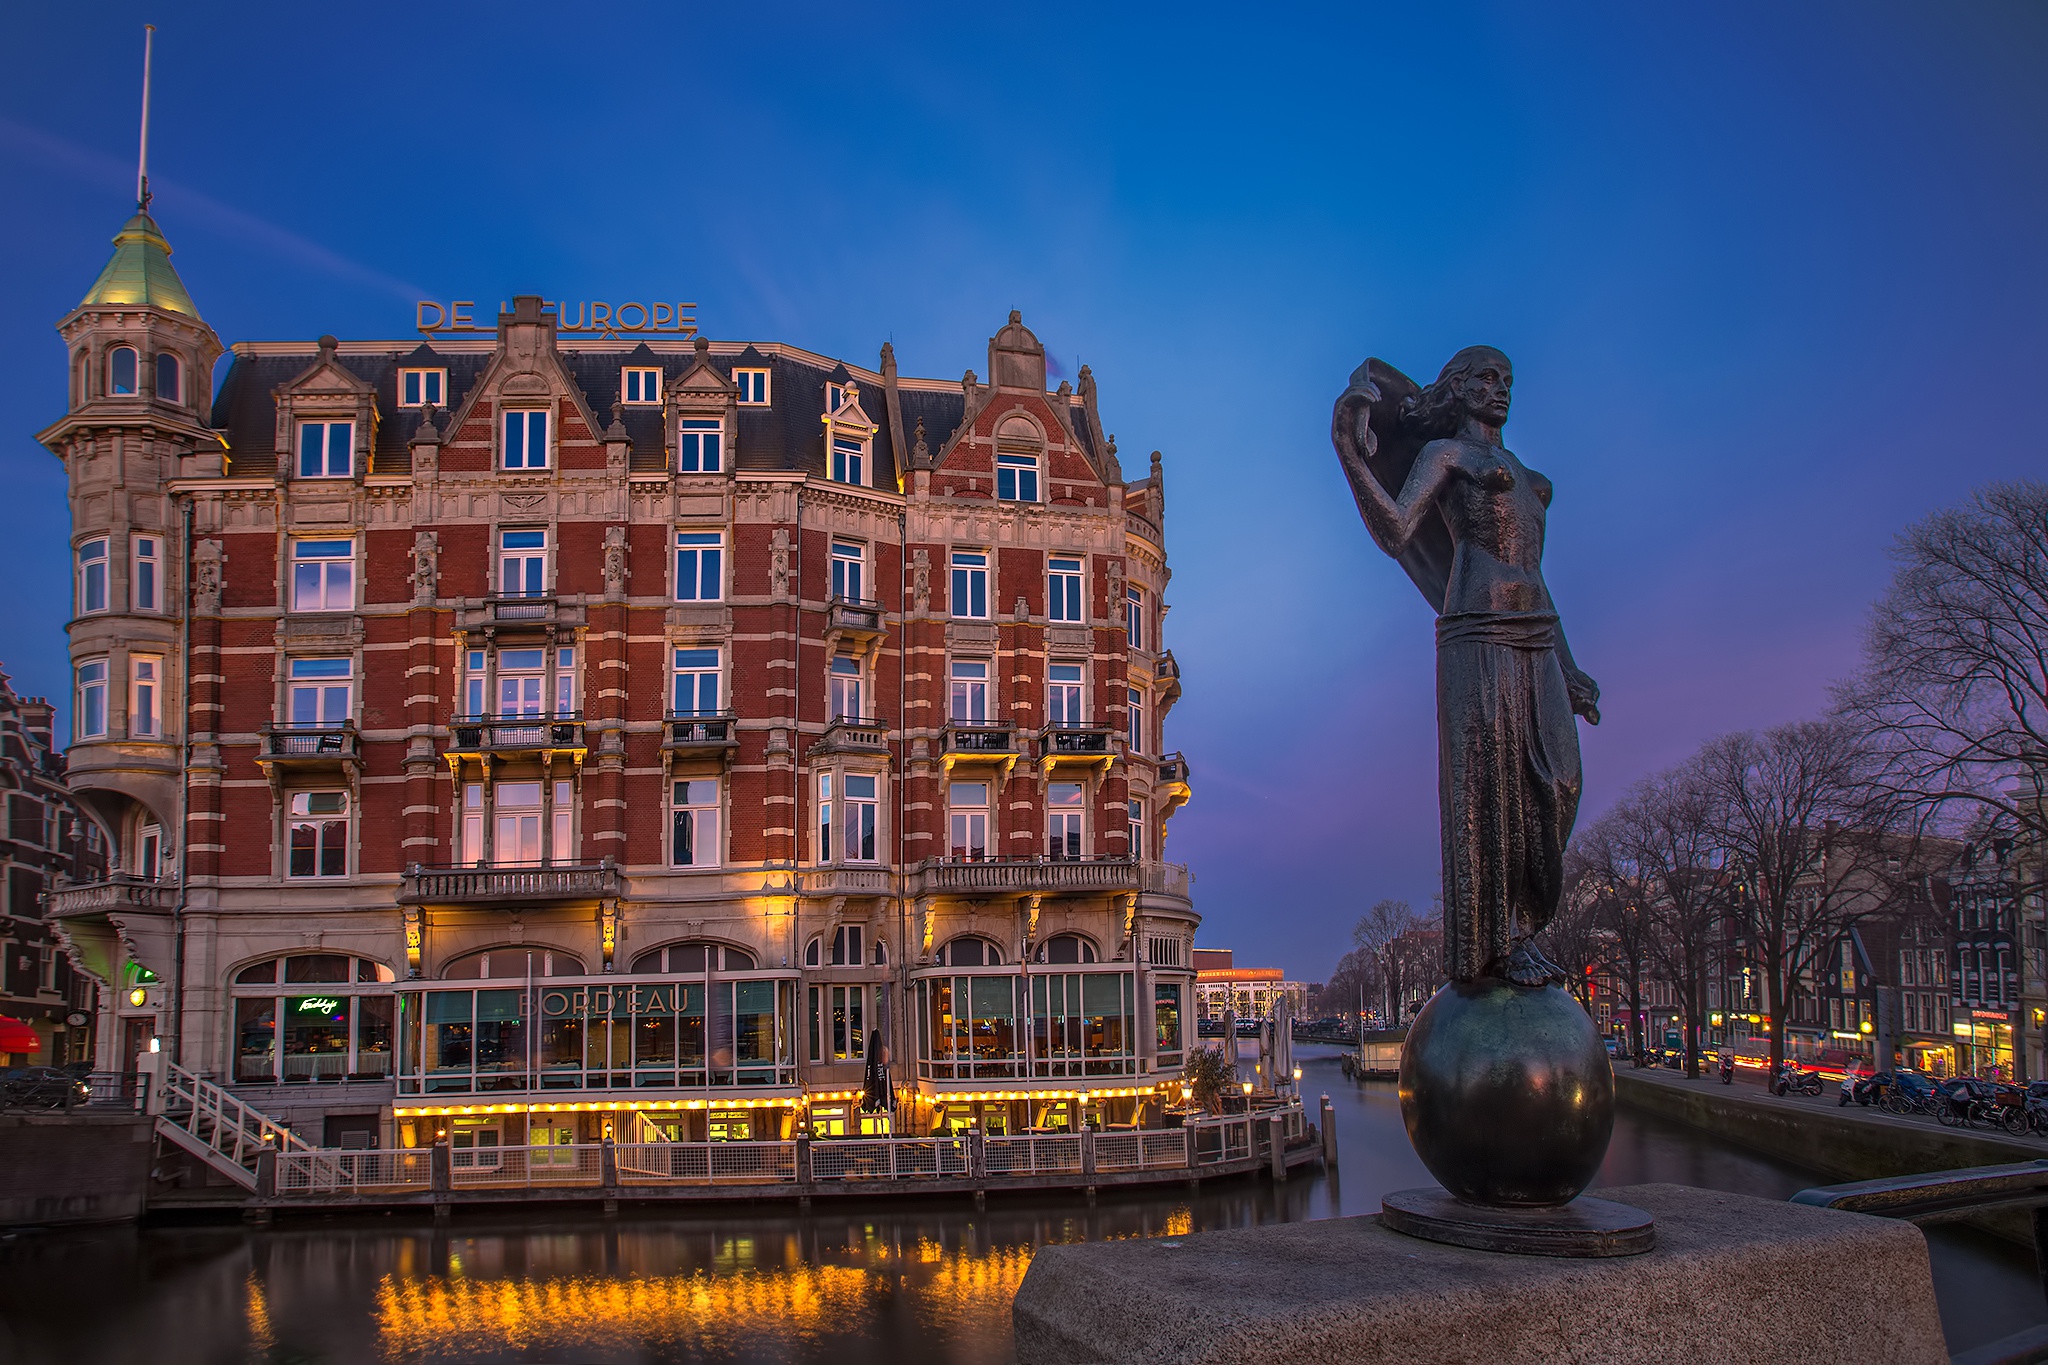 Скачать обои бесплатно Города, Дом, Статуя, Нидерланды, Амстердам, Сделано Человеком картинка на рабочий стол ПК